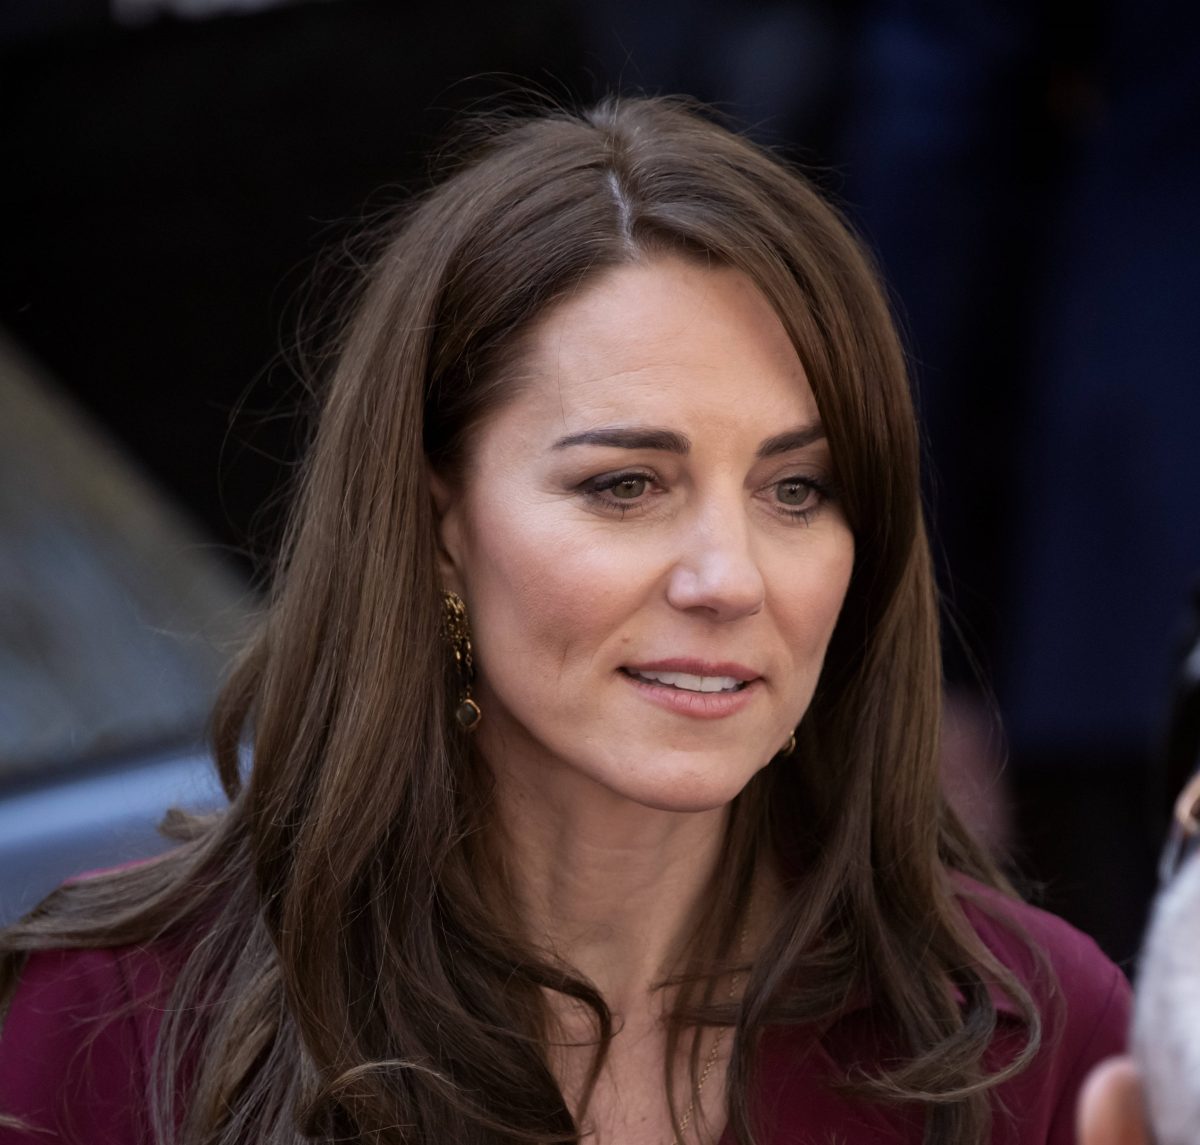 Kate Middleton kämpft noch immer tapfer gegen den Krebs. Ihre öffentliche Abwesenheit wirft allerdings bei vielen Royal-Fans Fragen auf...